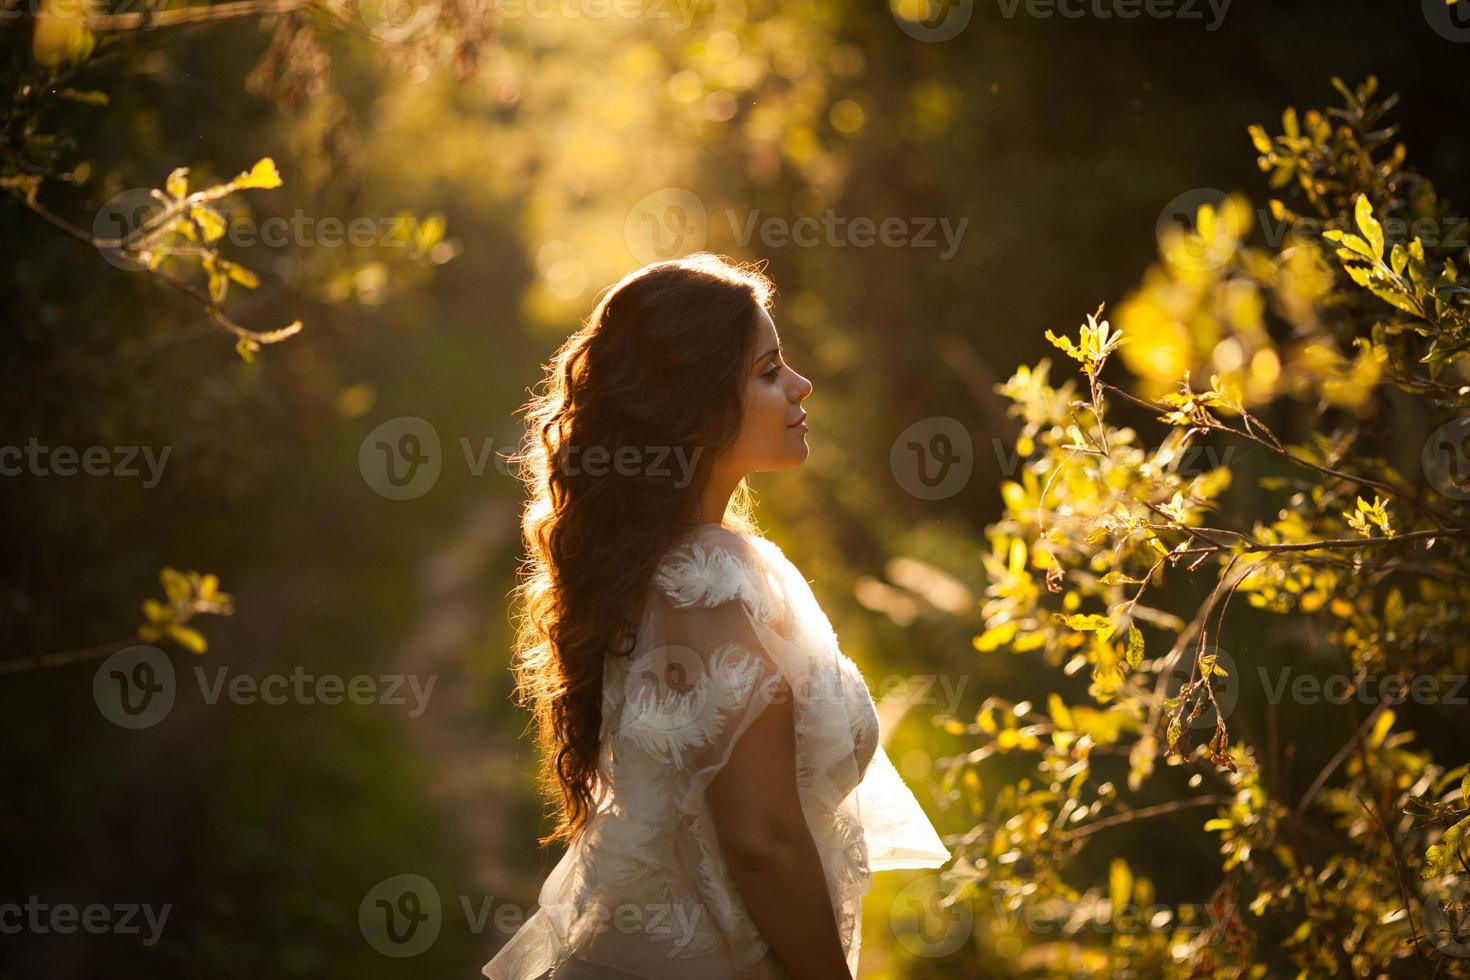 mulher no jardim ao pôr do sol foto